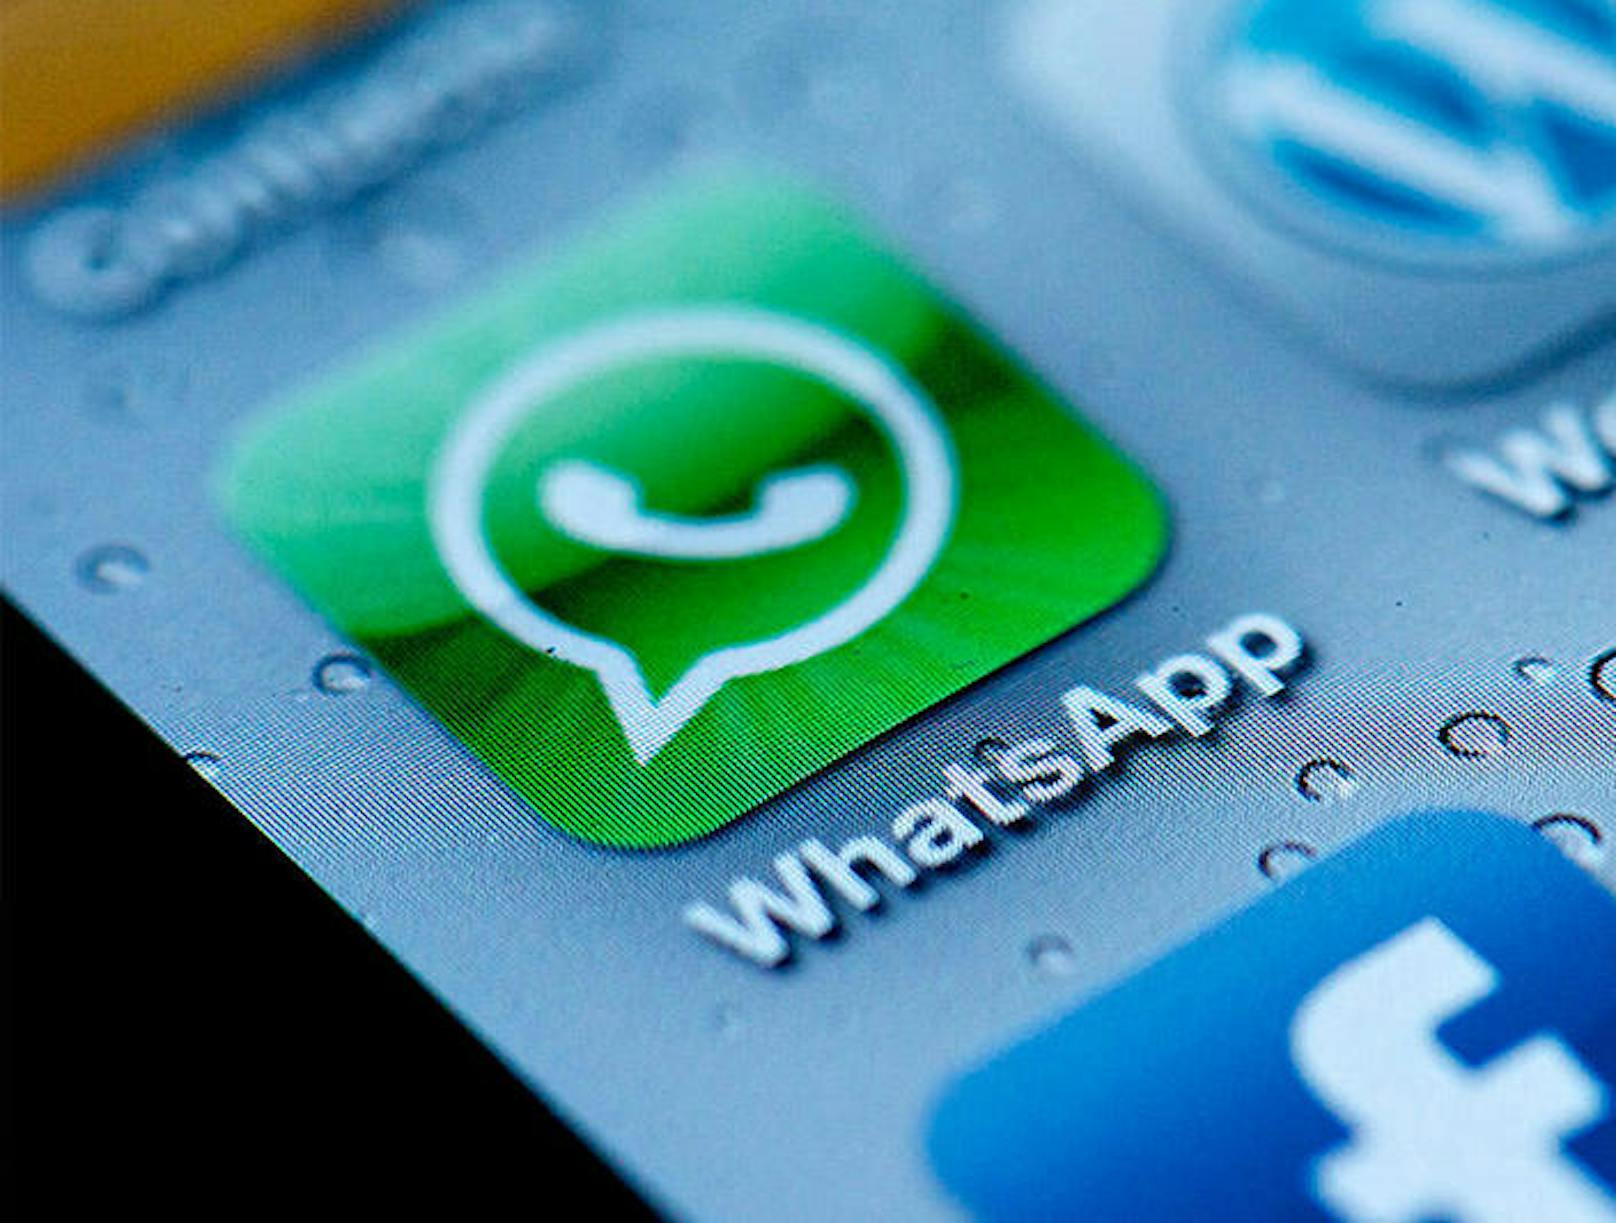 Auch verschlüsselte WhatsApp-Nachrichten sind demnach nicht so sicher wie gedacht. Wer eine Internetadresse in eine Konversation reinkopiert, ist nicht davon betroffen. WhatsApp will die Sicherheitslücke baldmöglichst schließen.